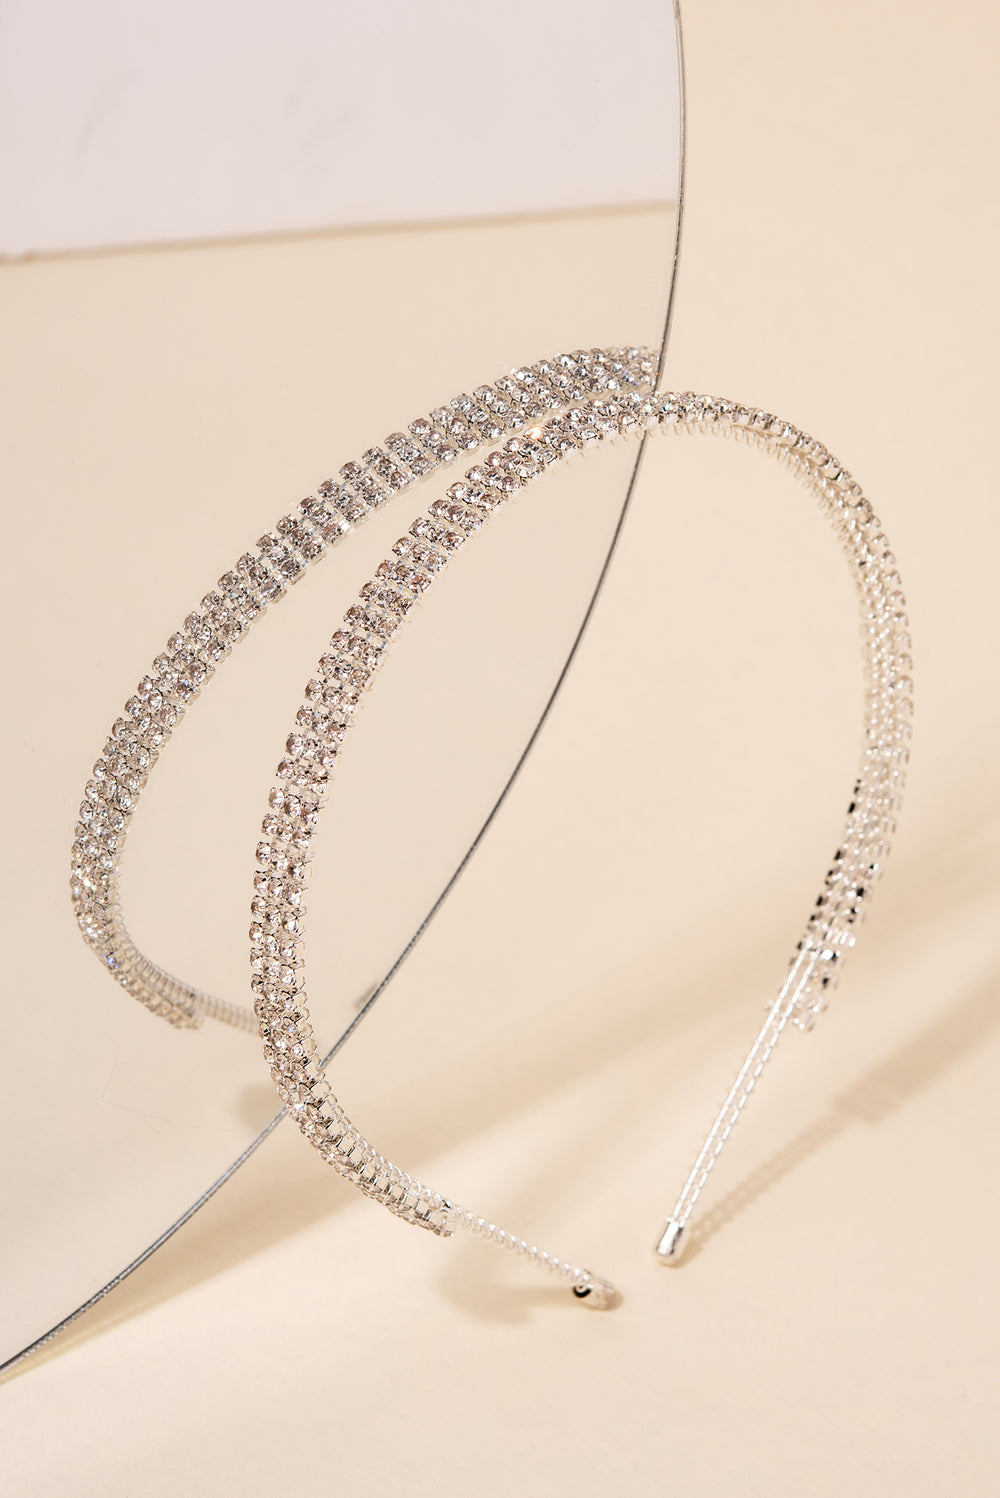 Elizelle 3 Line Rhinestone Embellished Headband - Silver